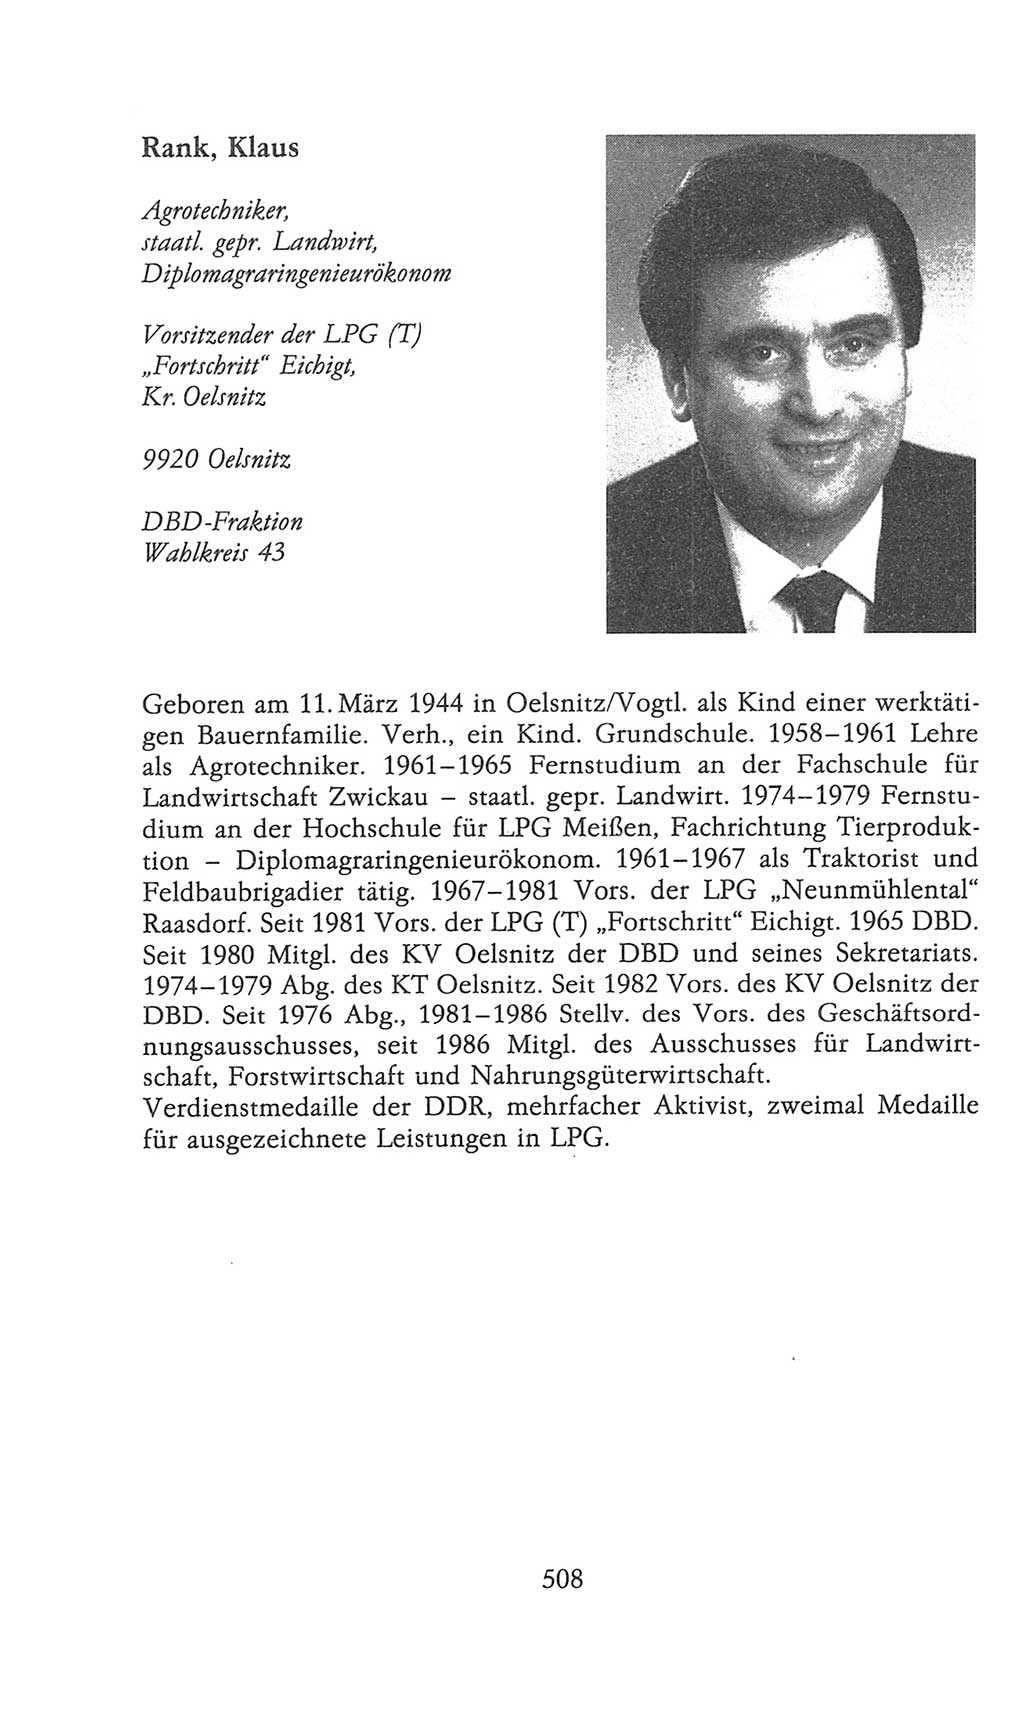 Volkskammer (VK) der Deutschen Demokratischen Republik (DDR), 9. Wahlperiode 1986-1990, Seite 508 (VK. DDR 9. WP. 1986-1990, S. 508)